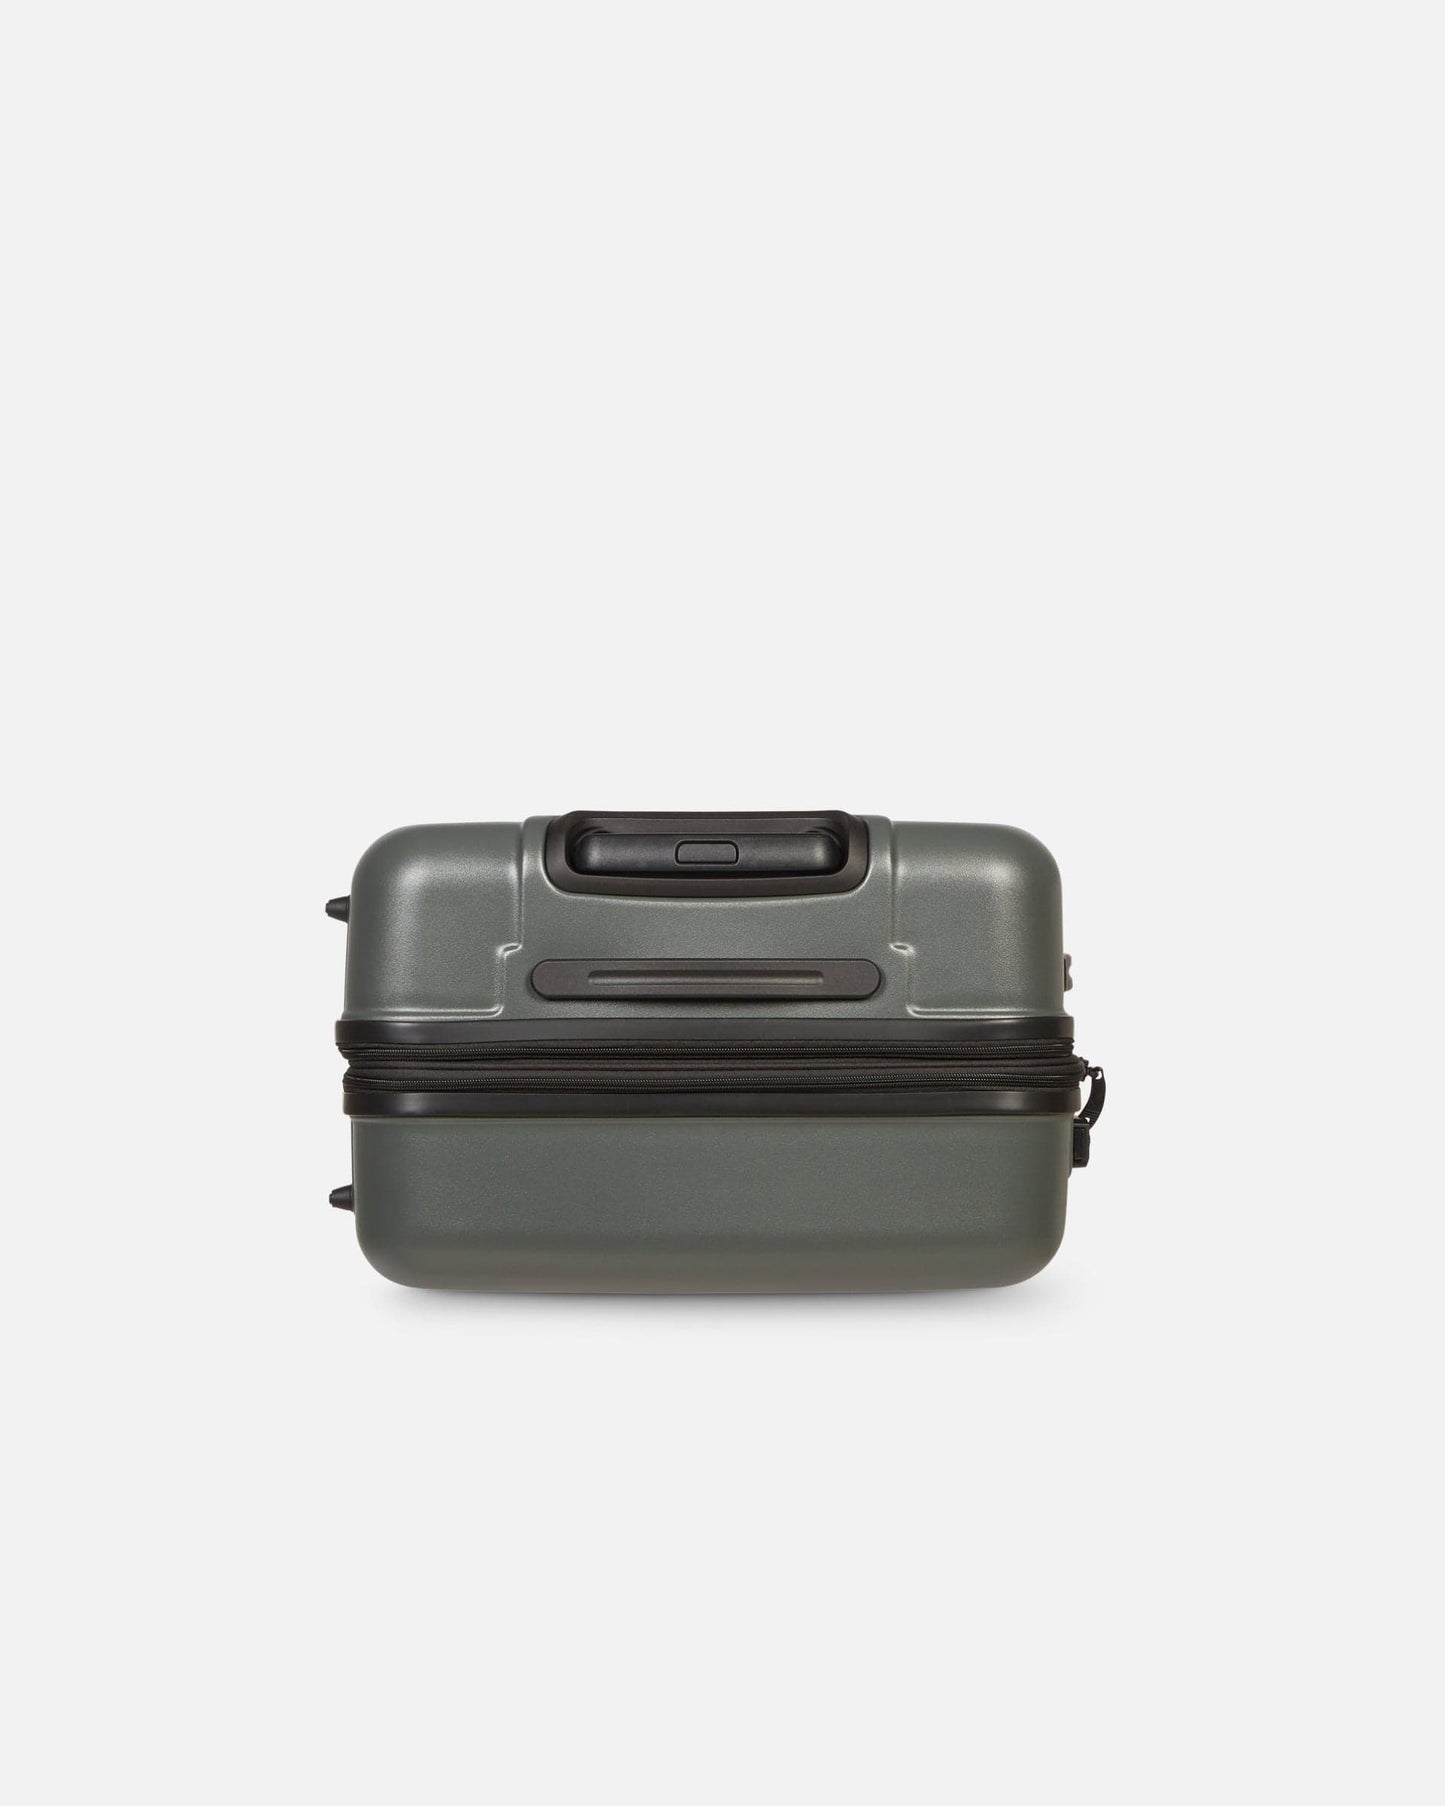 Antler UK Luggage -  Logo set in moss grey - Hard Suitcases Logo Set of 3 Suitcases Grey | Lightweight Hard Shell Luggage